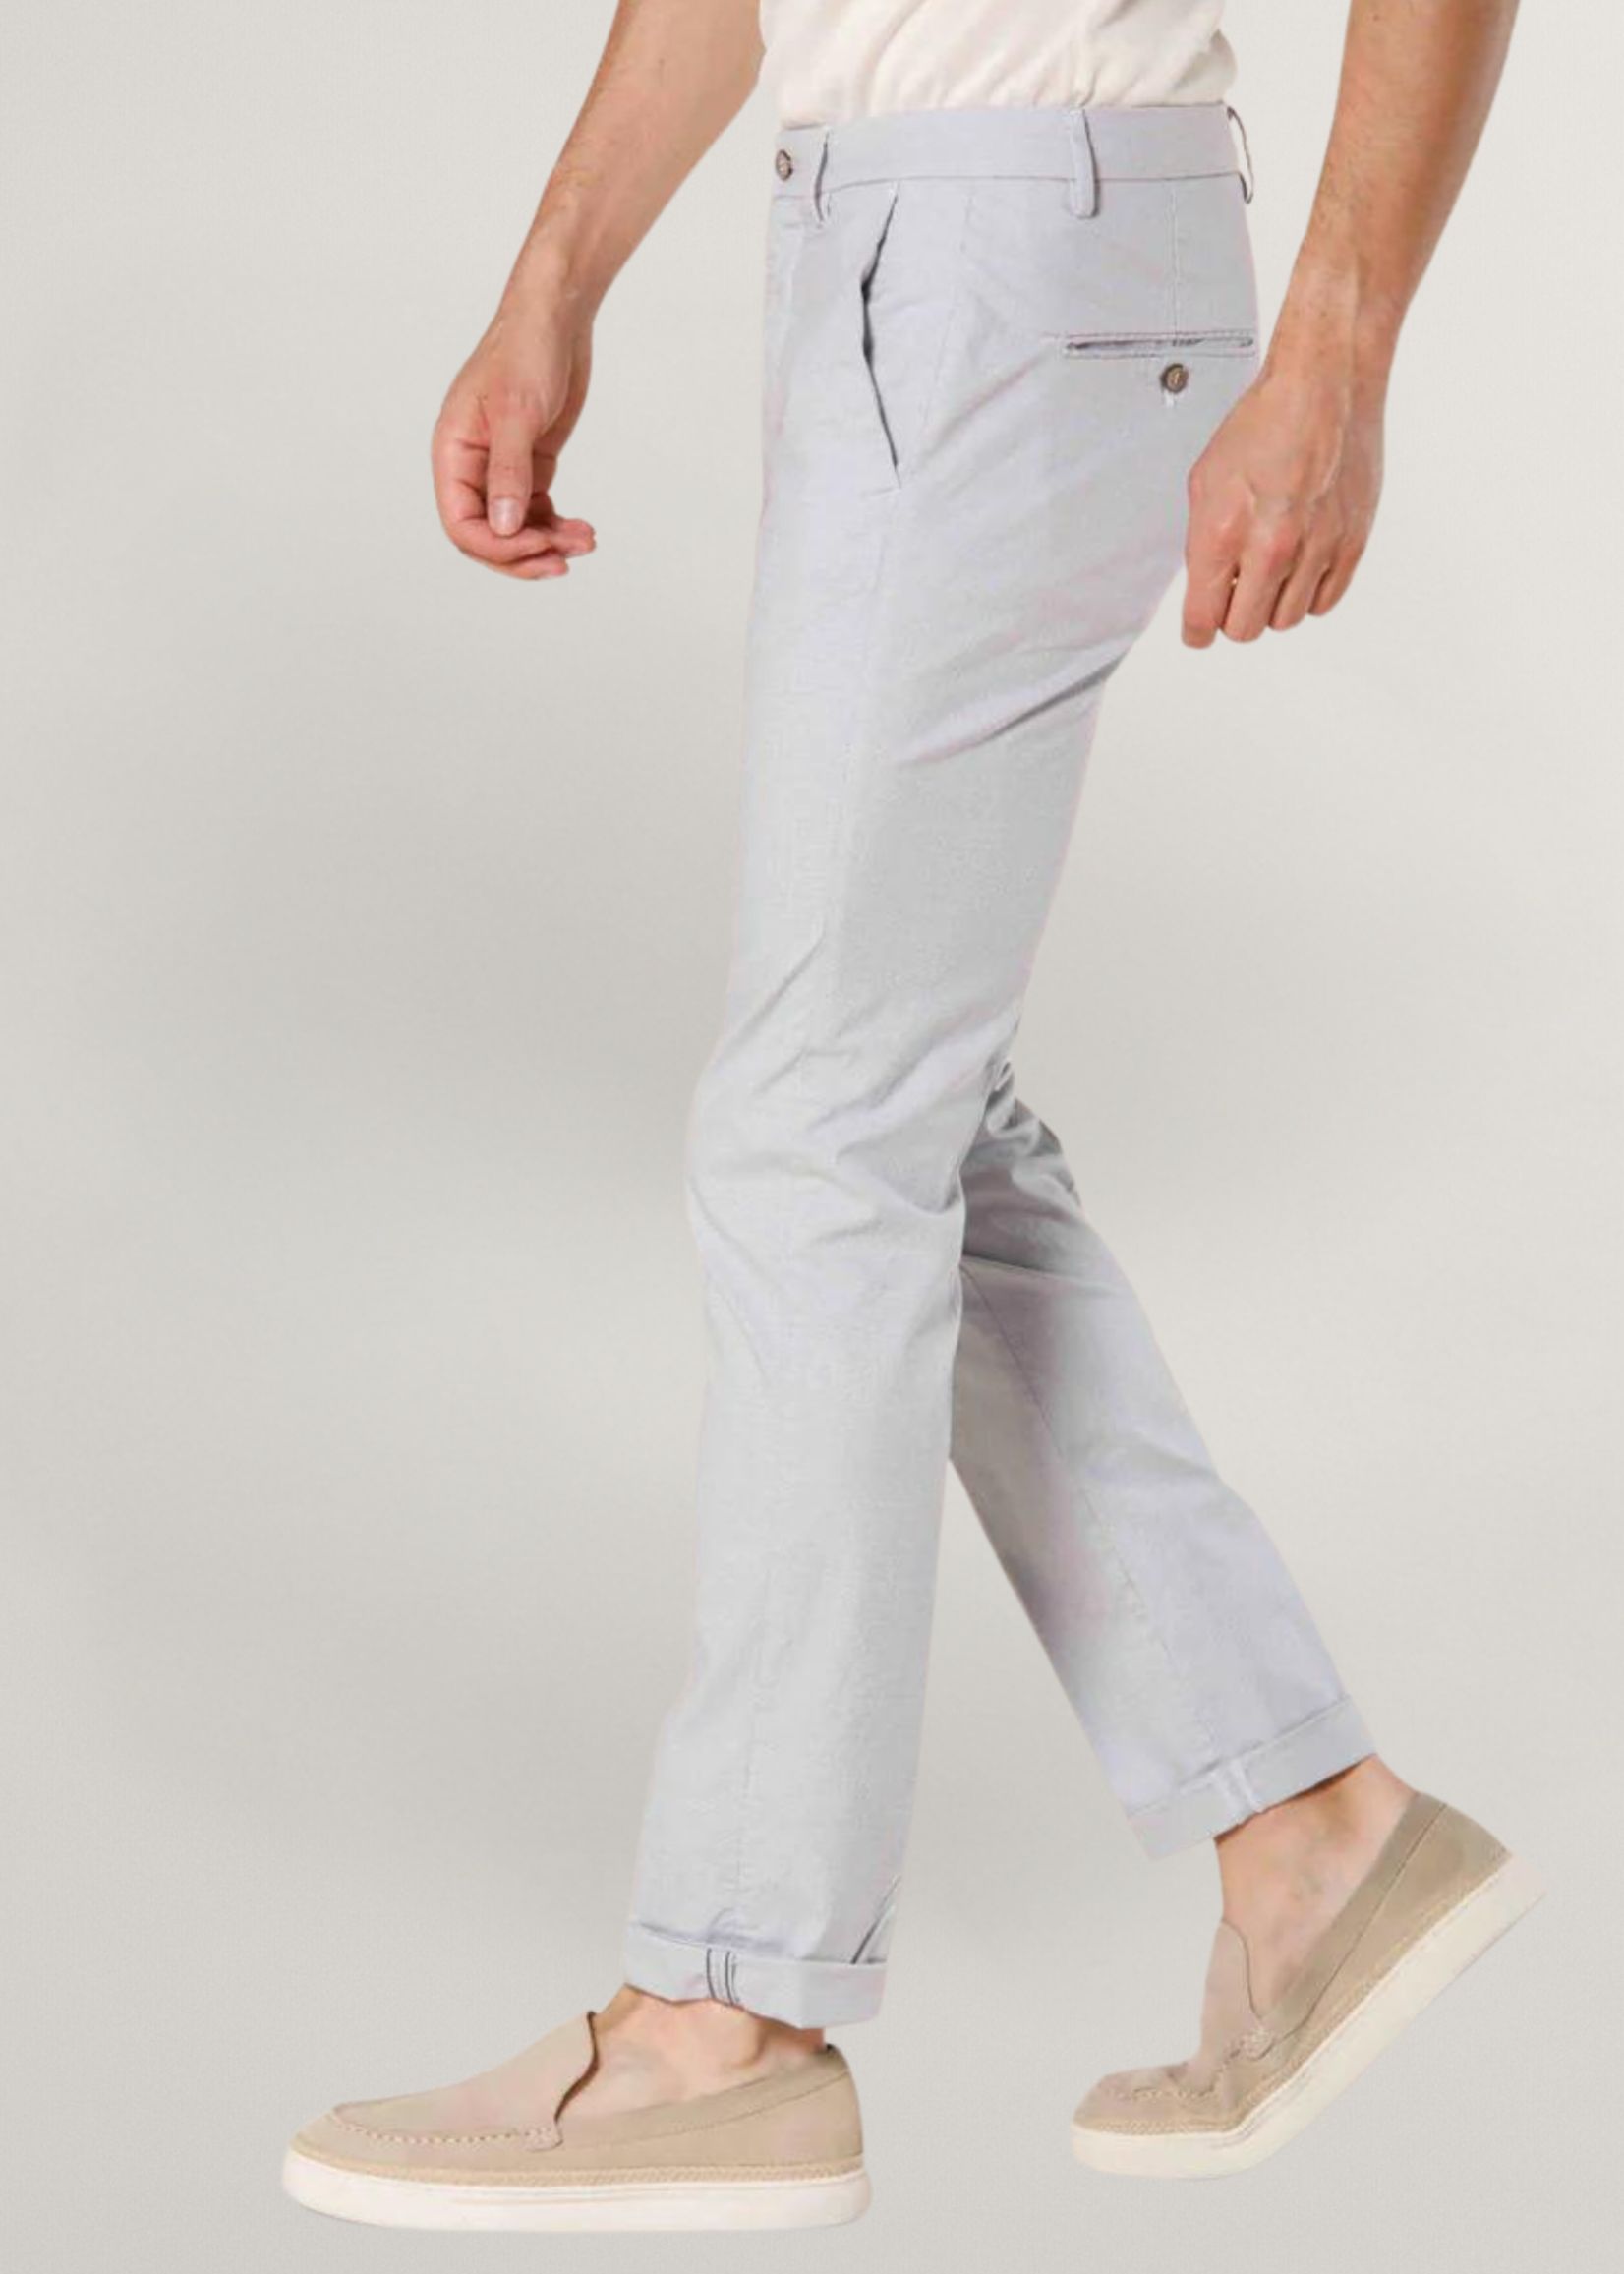 MASON'S Torino Limited pantalon chino homme en coton et tencel micro-motifs slim - Blanc